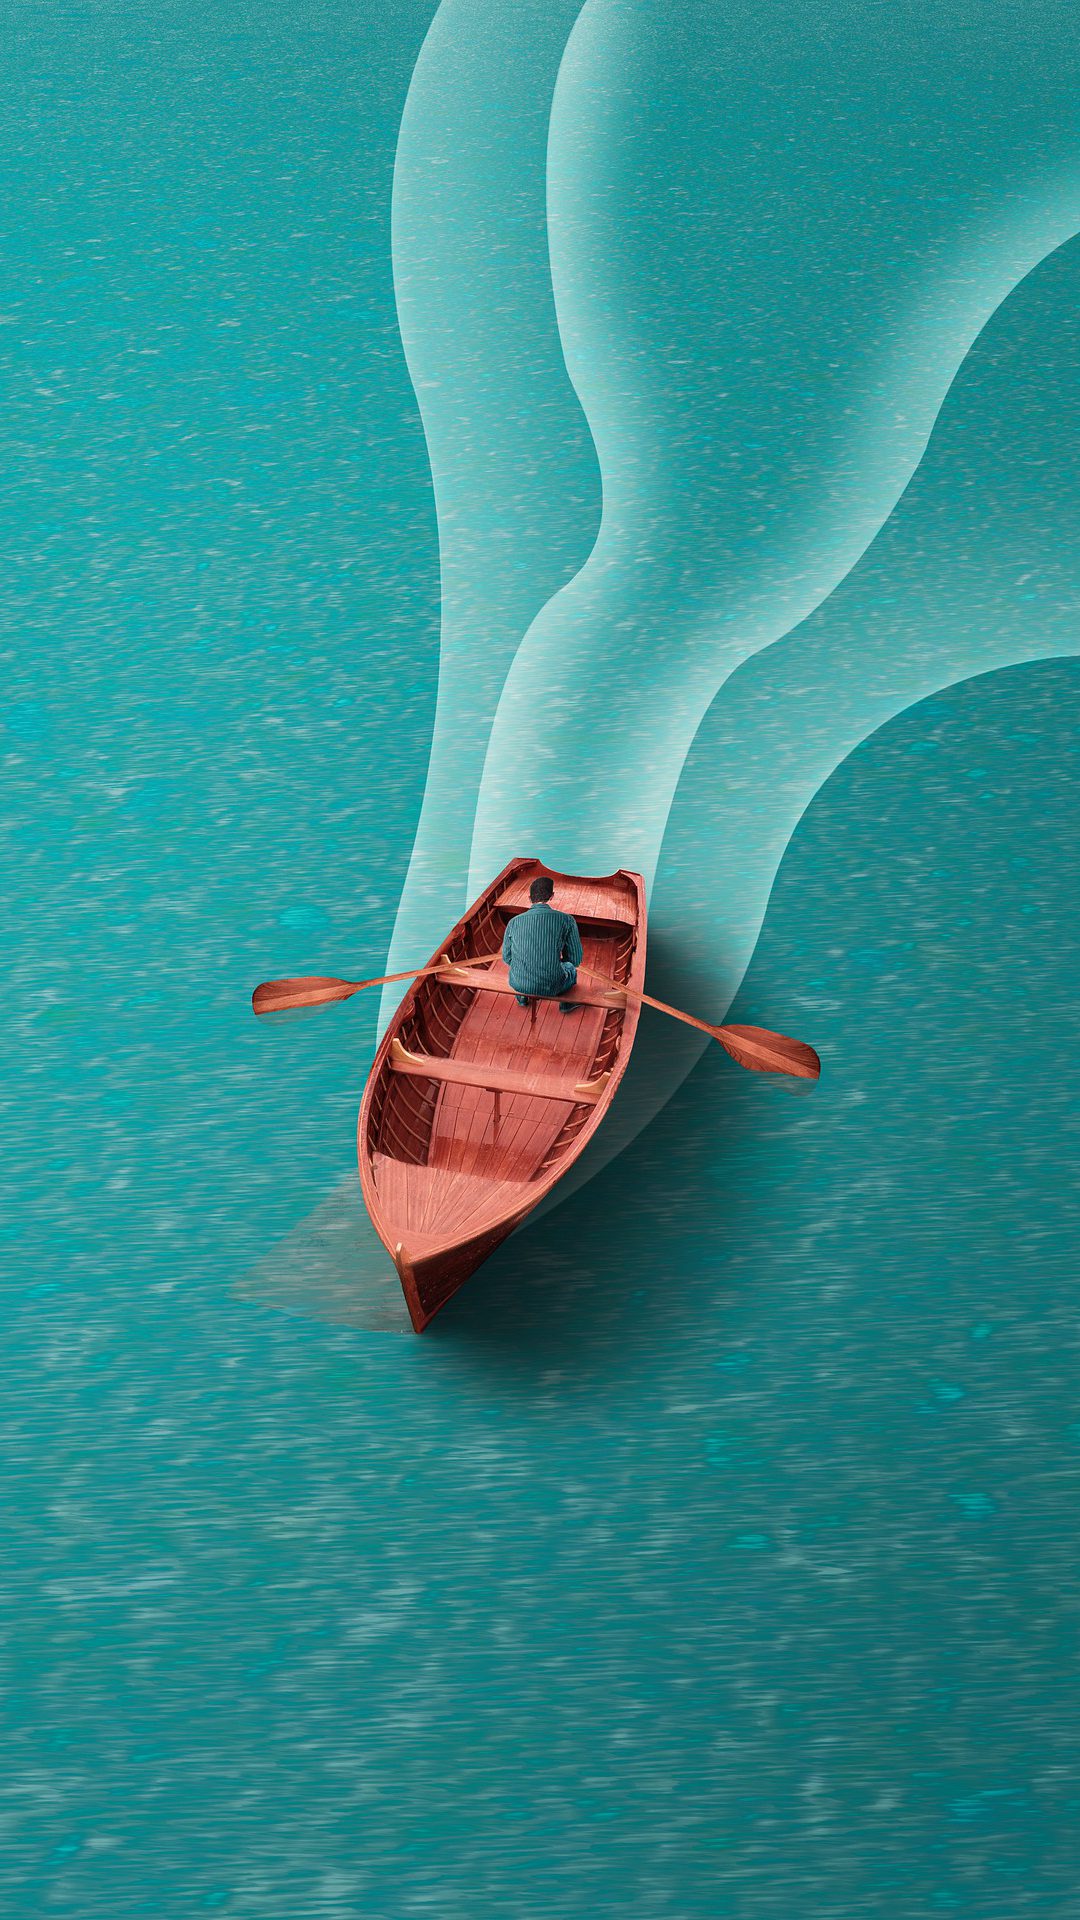 一个划船的男子非主流插画手机壁纸图片 平静蔚蓝的<span style='color:red;'>湖面</span>